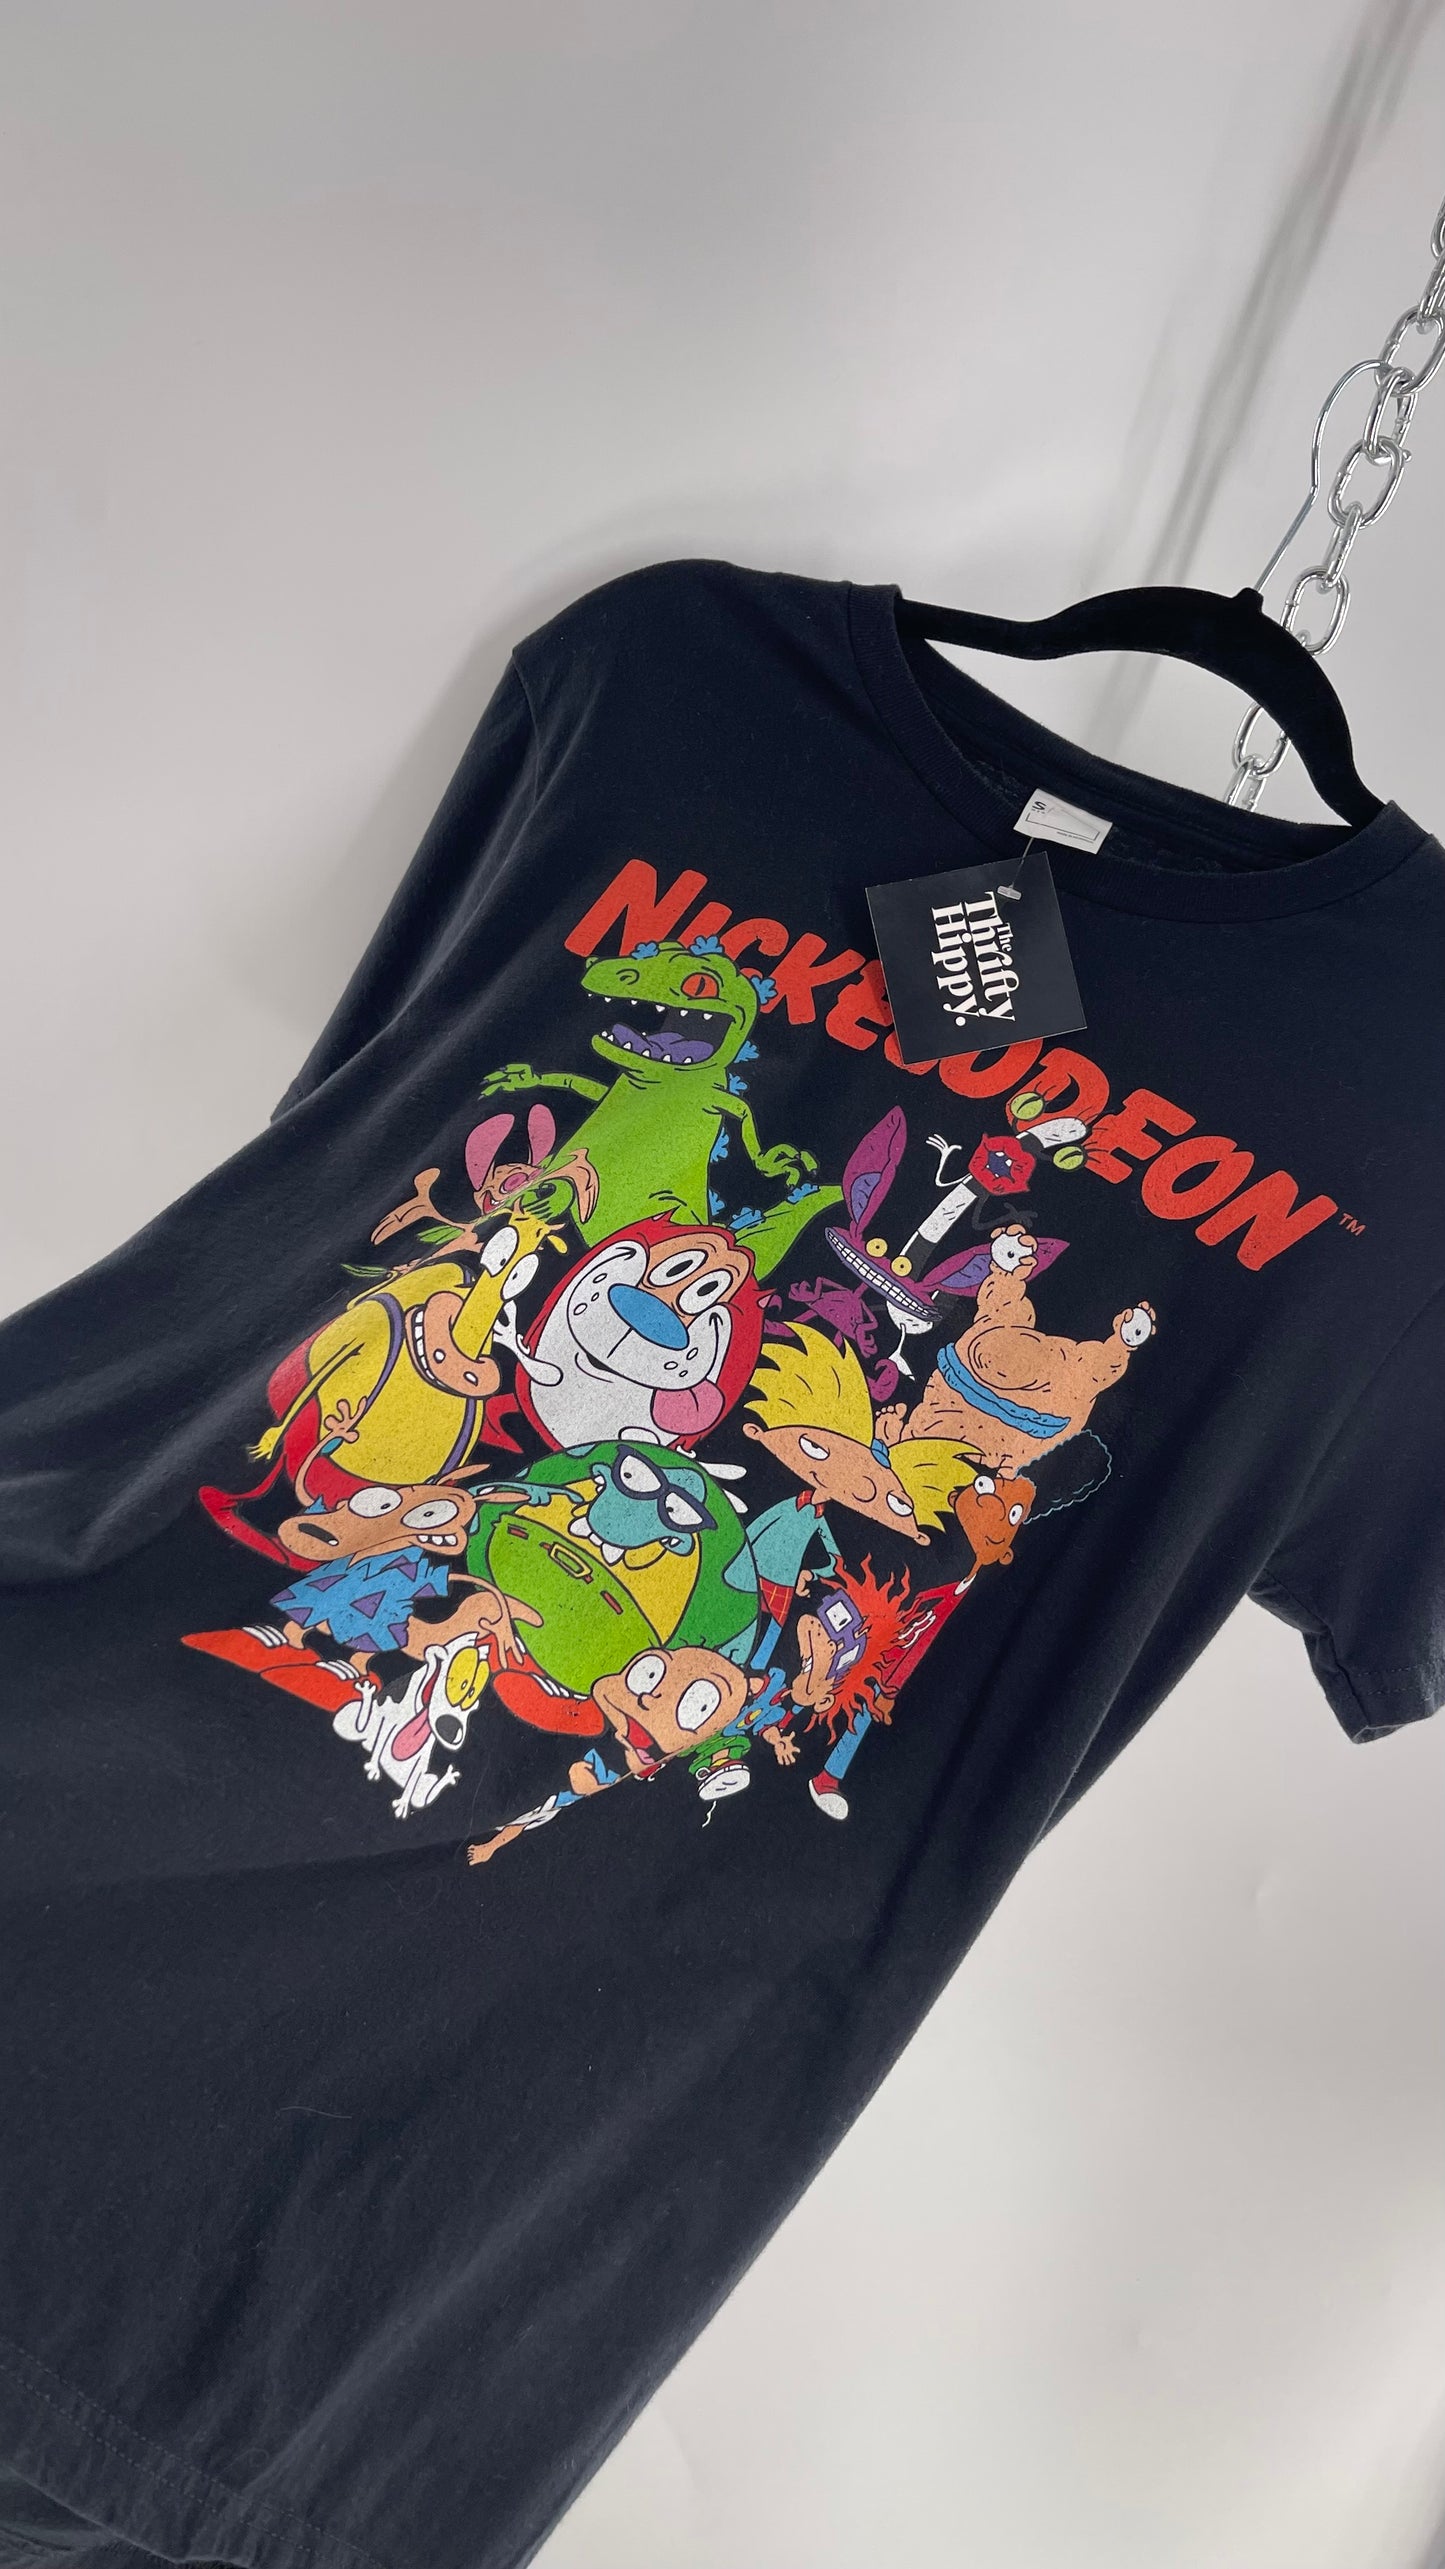 Vintage Old School Nickelodeon T Shirt (S)